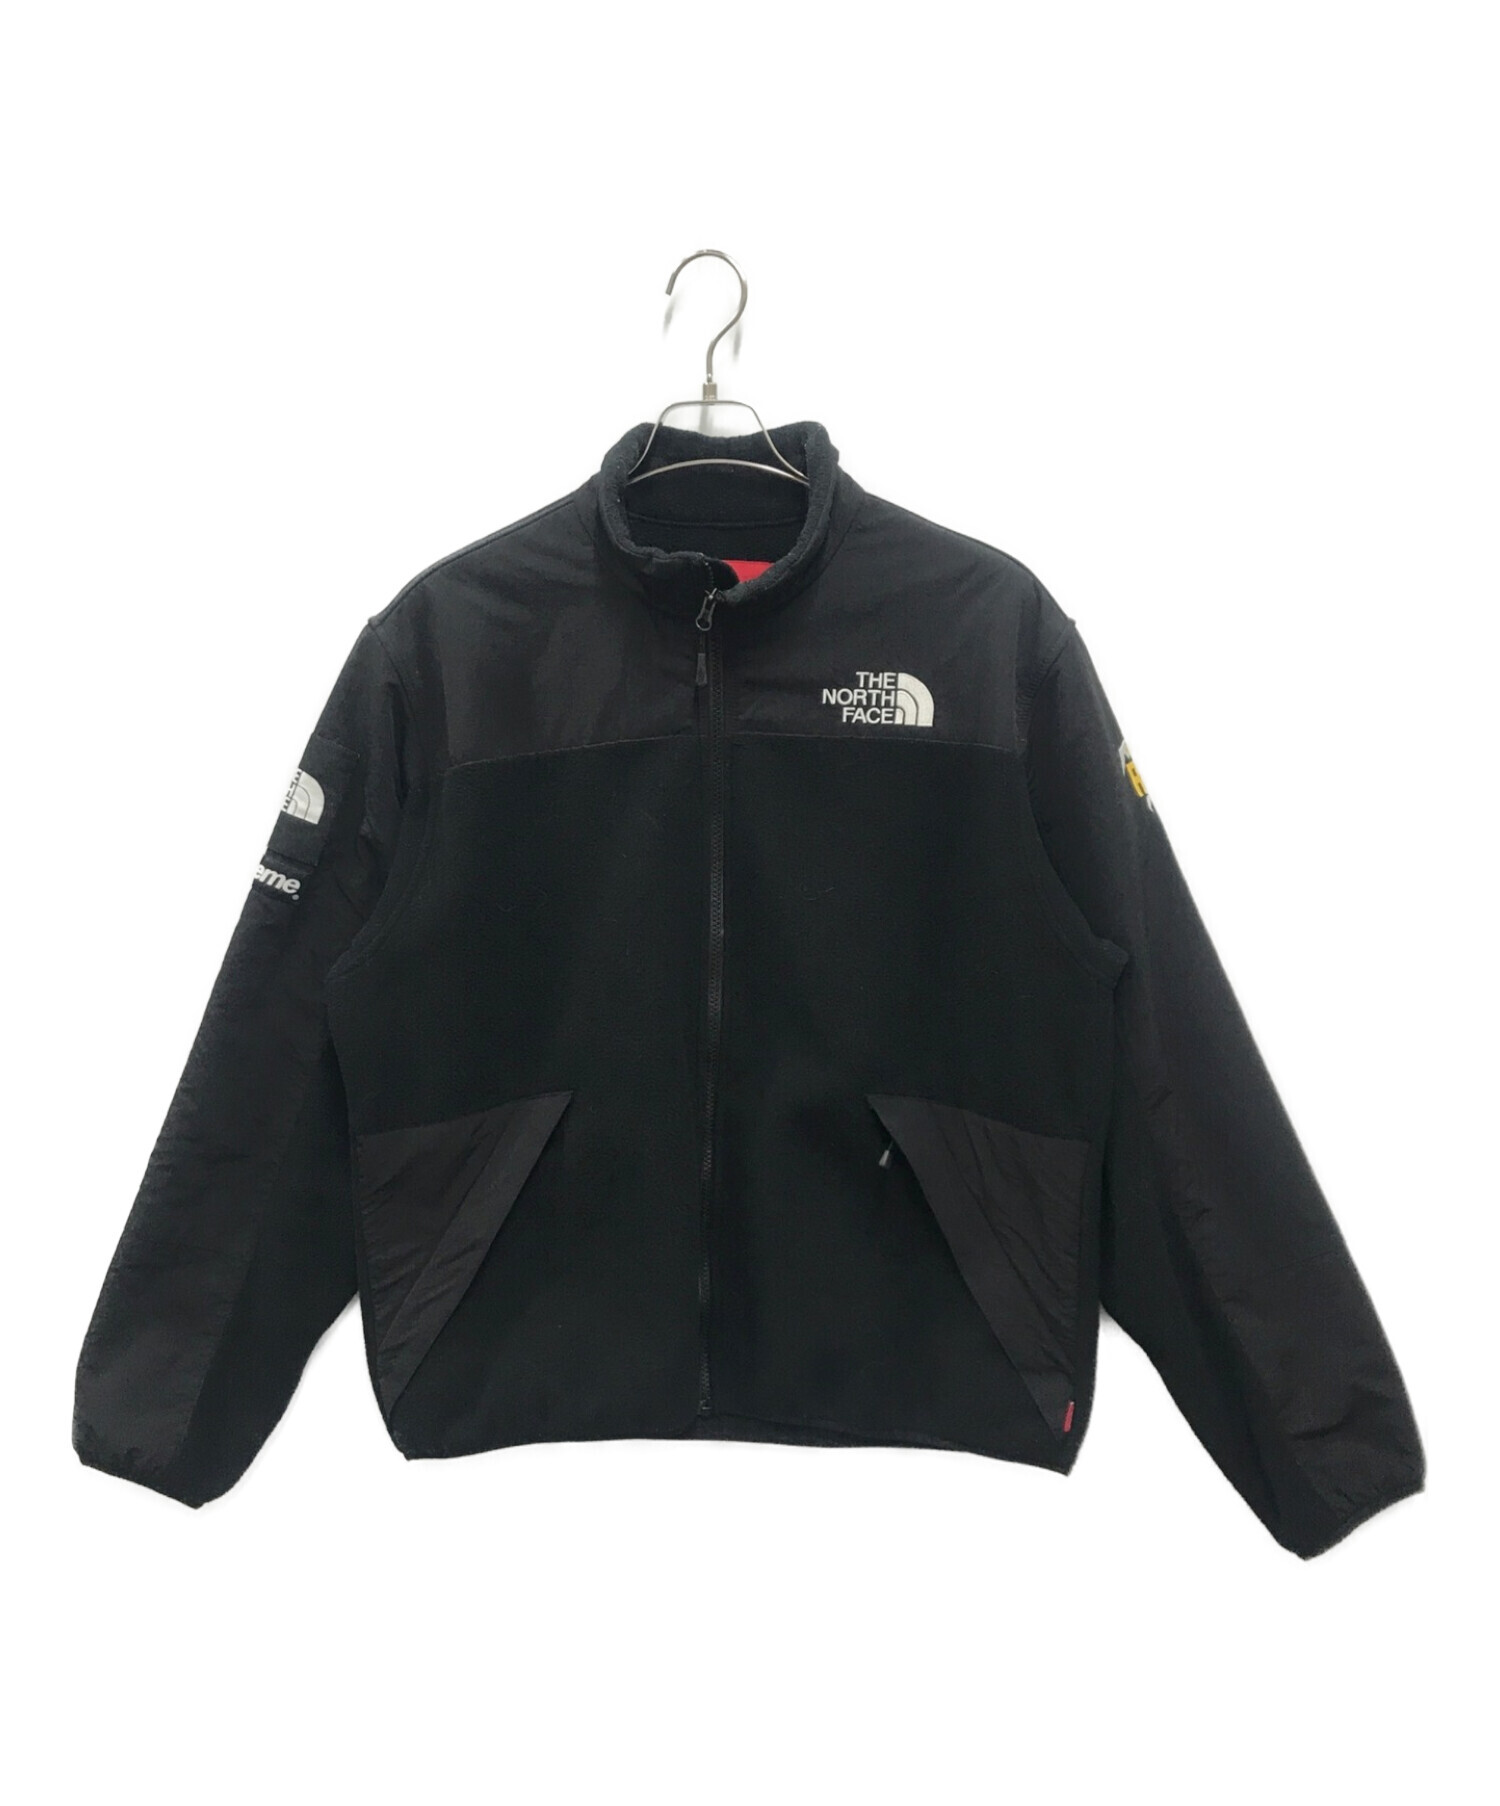 Supreme (シュプリーム) THE NORTH FACE (ザ ノース フェイス) RTG Fleece Jacket ブラック サイズ:M